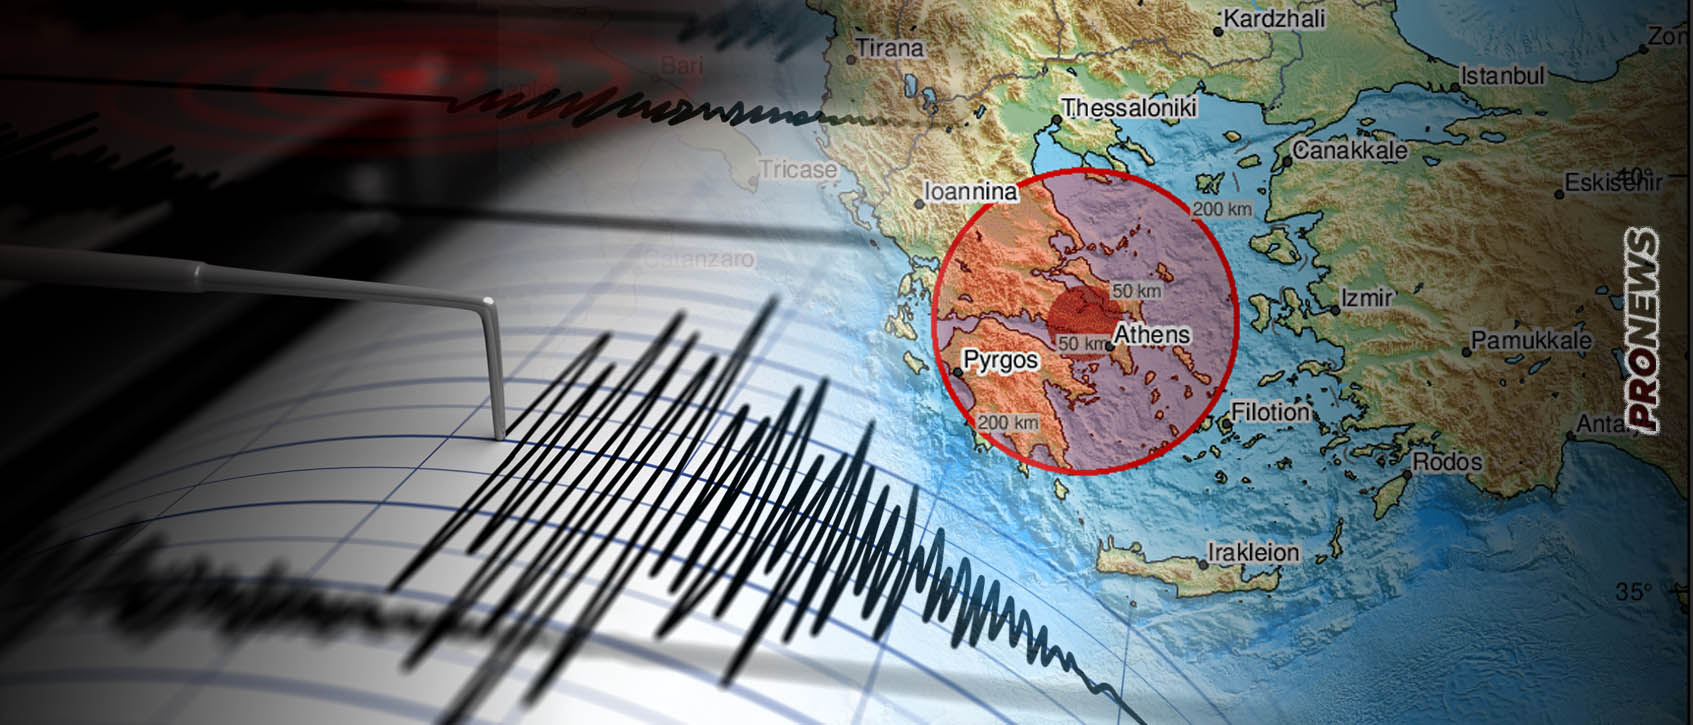 Σεισμός 4,8 Ρίχτερ στη Βοιωτία – Aισθητός και στην Αθήνα: «Νέο και σχετικά μικρό ρήγμα έδωσε τον σεισμό – Δεν συνδέεται με την Αταλάντη»